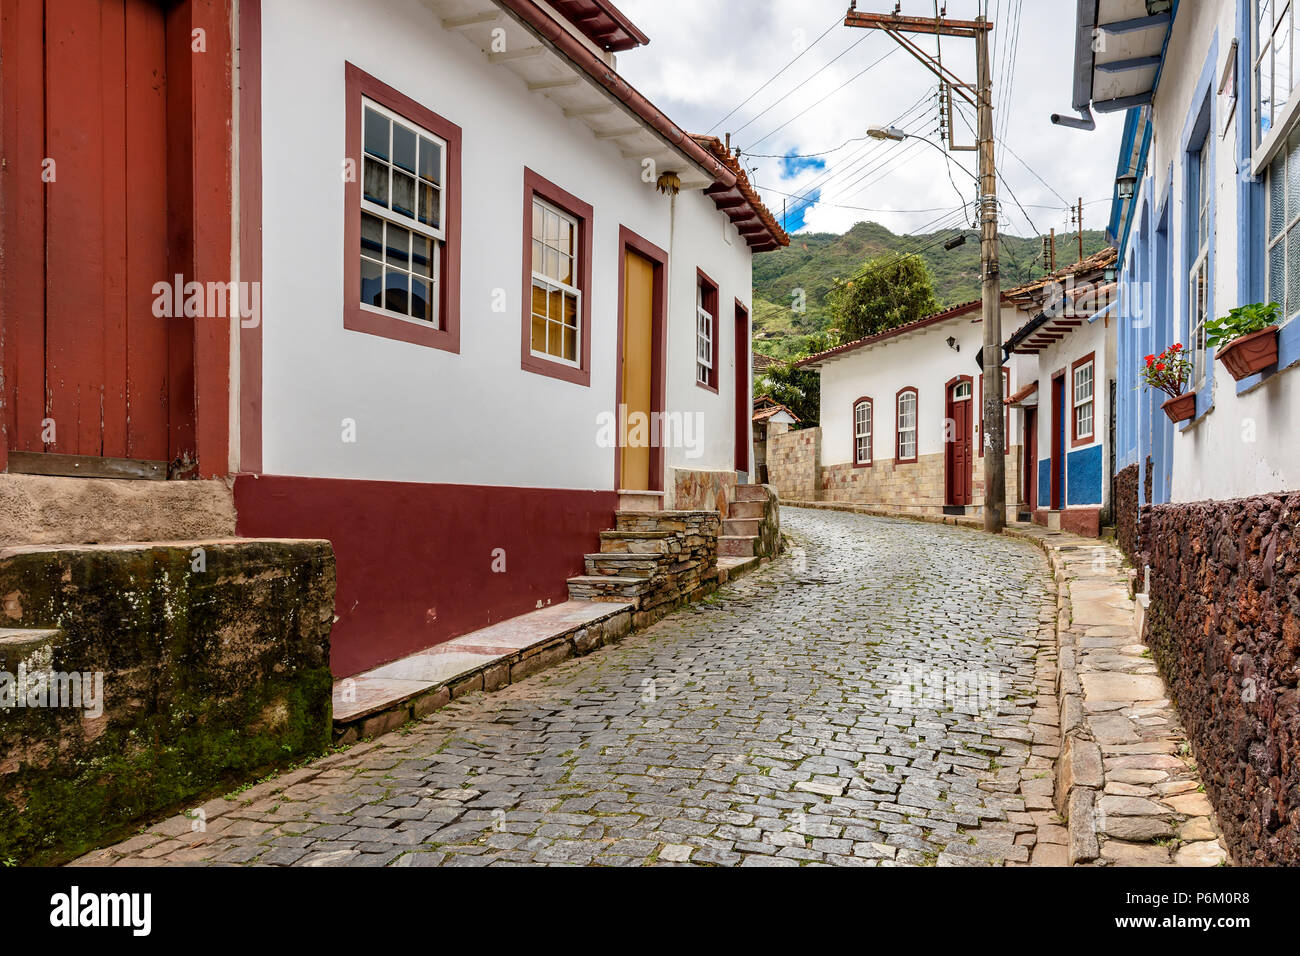 Petite rue pavée avec des maisons à l'architecture coloniale dans la célèbre ville d'Ouro Preto, dans le Minas Gerais Banque D'Images